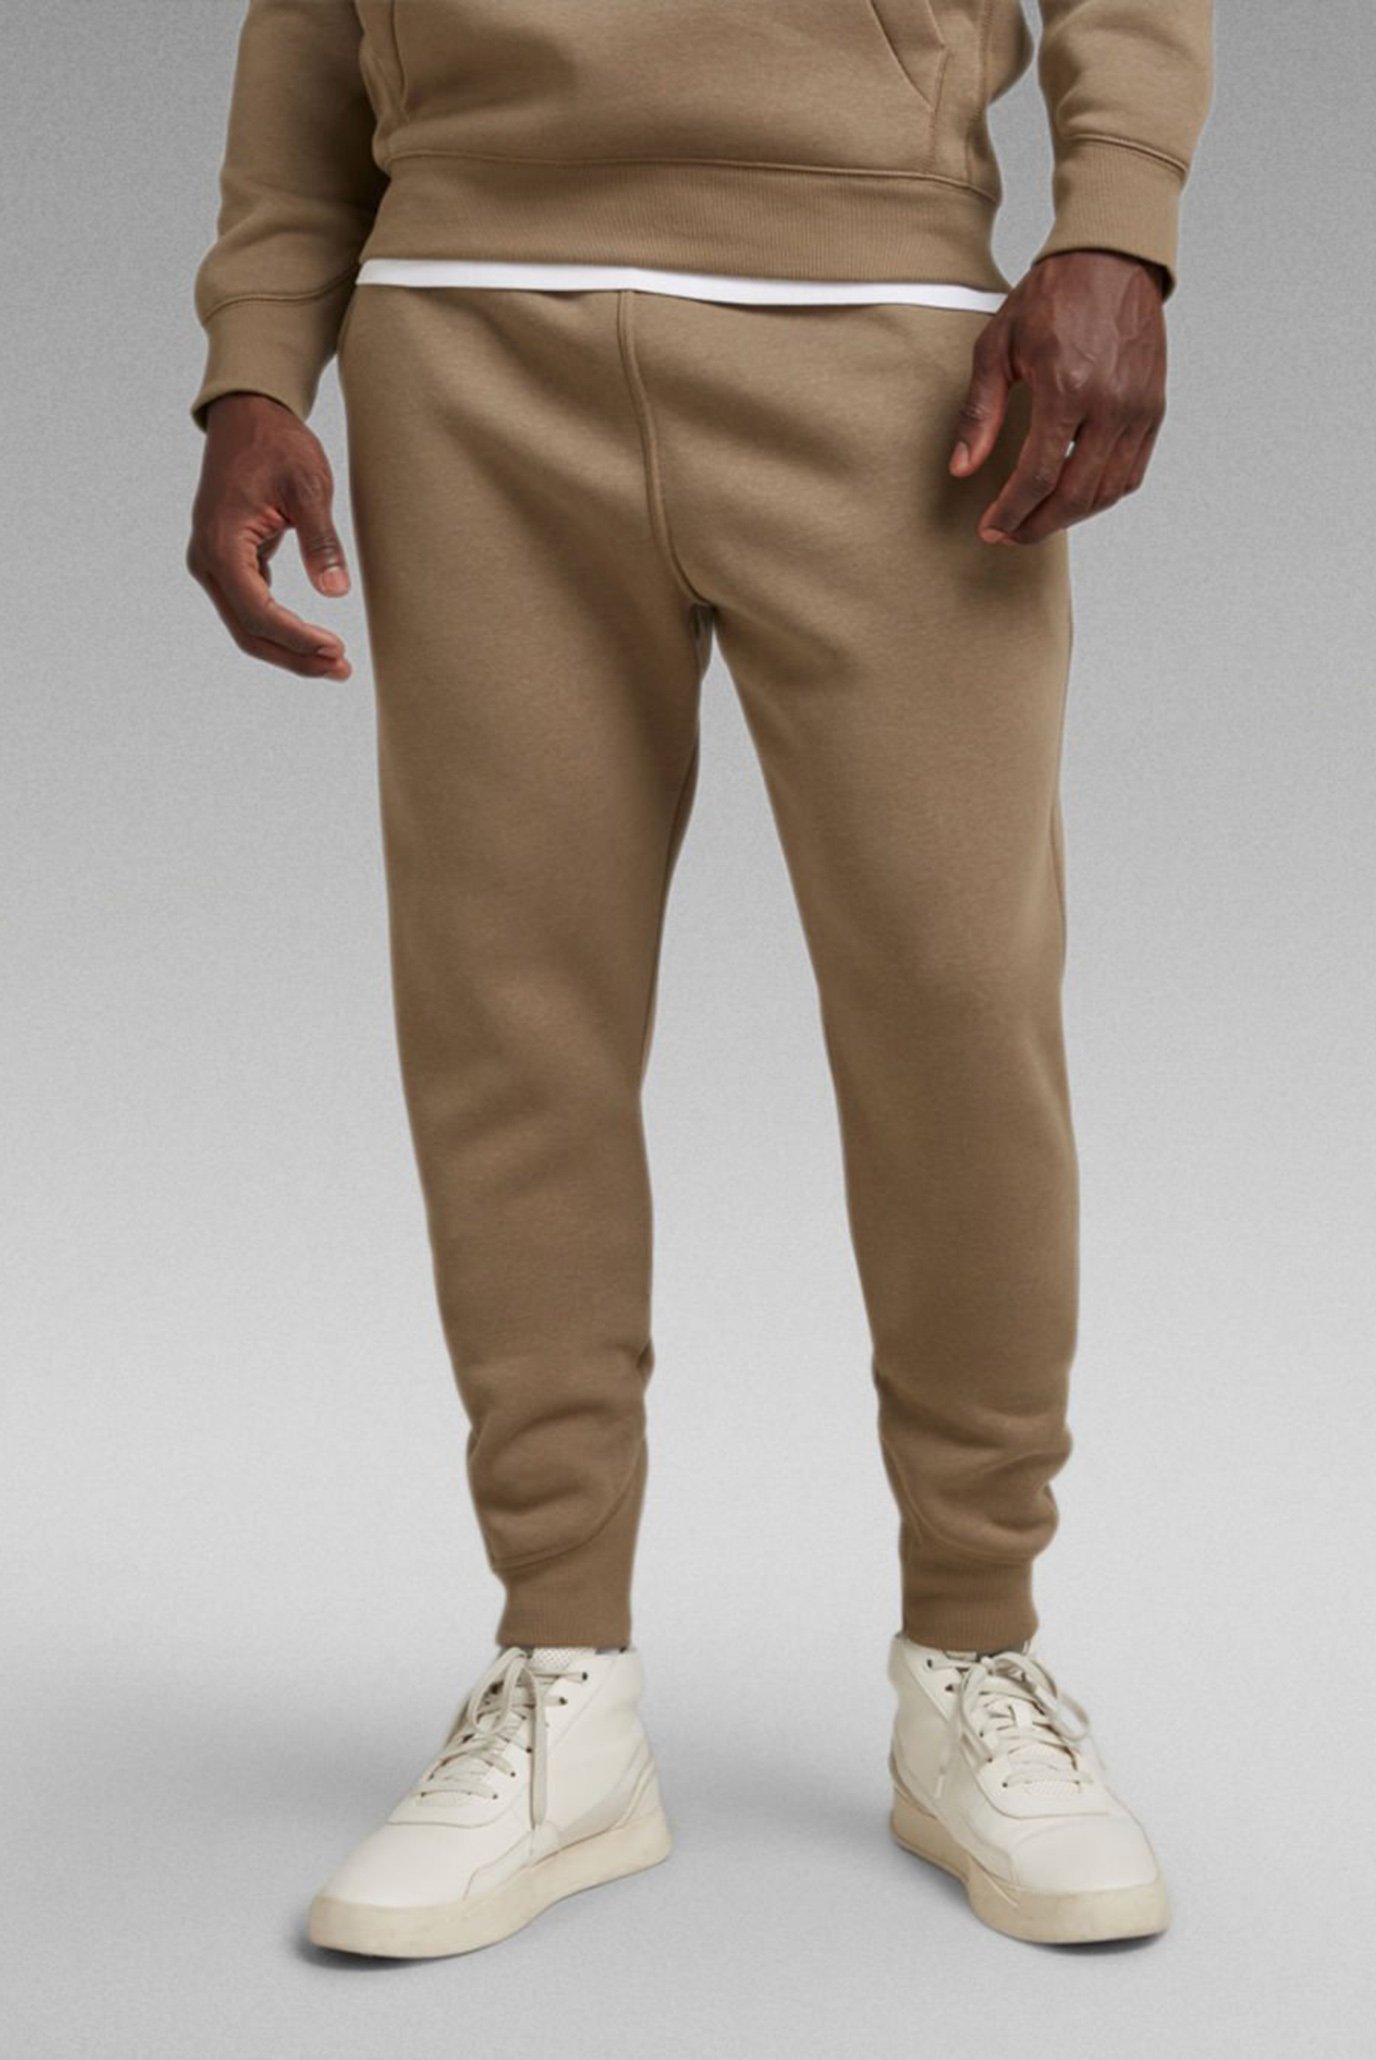 Чоловічі коричневі спортивні штани Premium core type 1